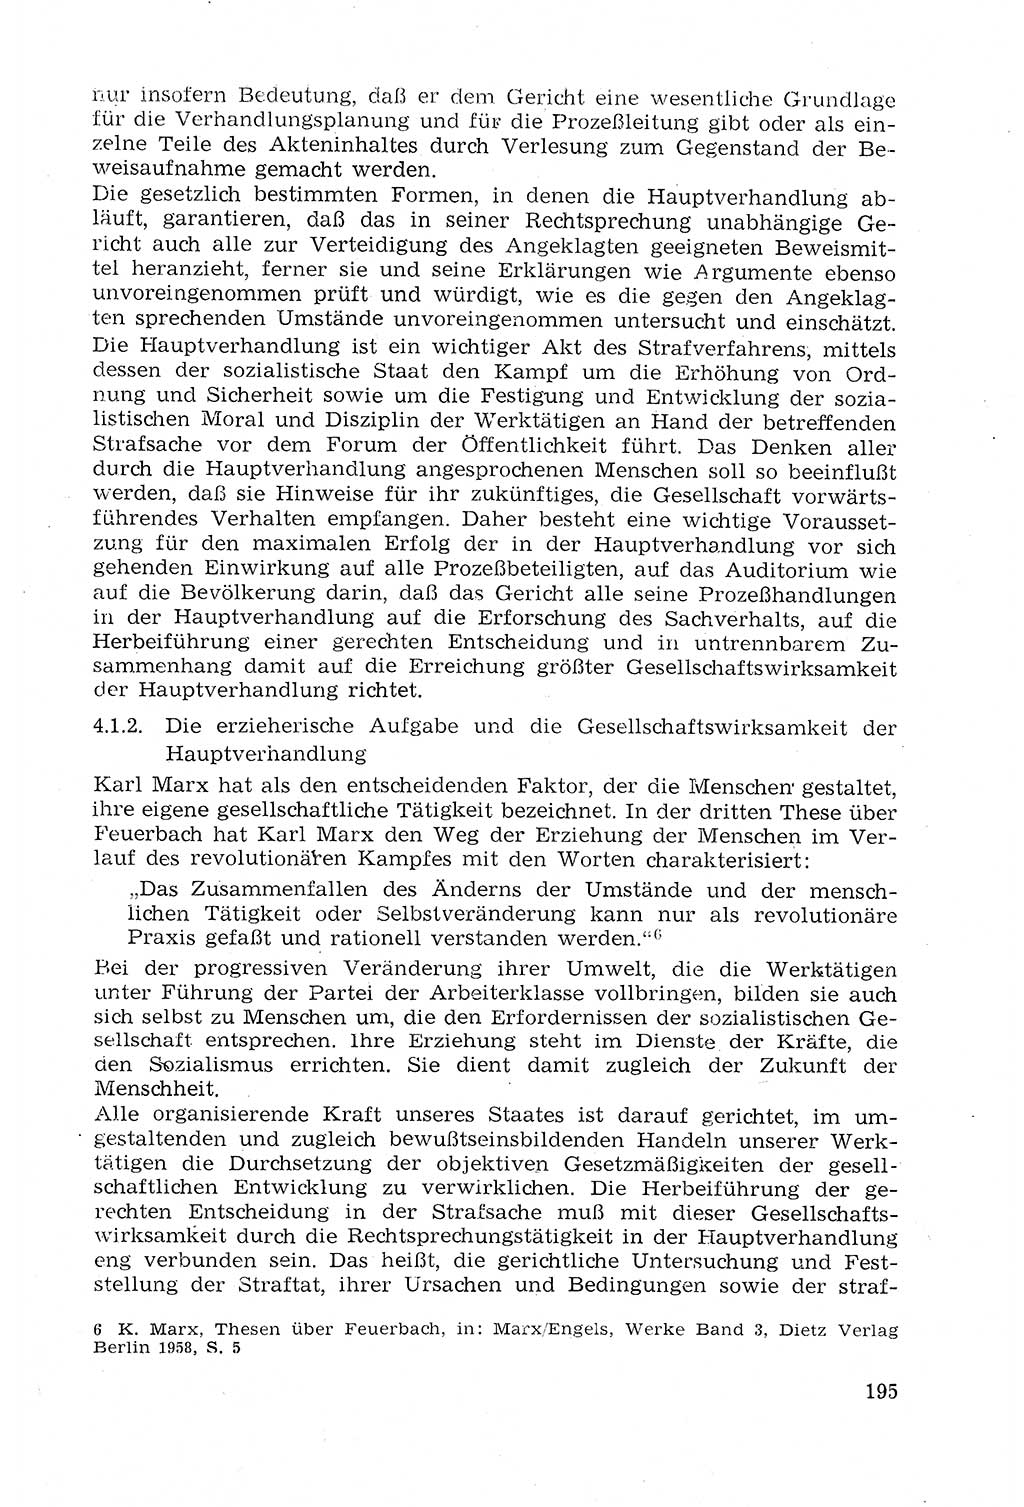 Strafprozeßrecht der DDR (Deutsche Demokratische Republik), Lehrmaterial 1969, Seite 195 (Strafprozeßr. DDR Lehrmat. 1969, S. 195)